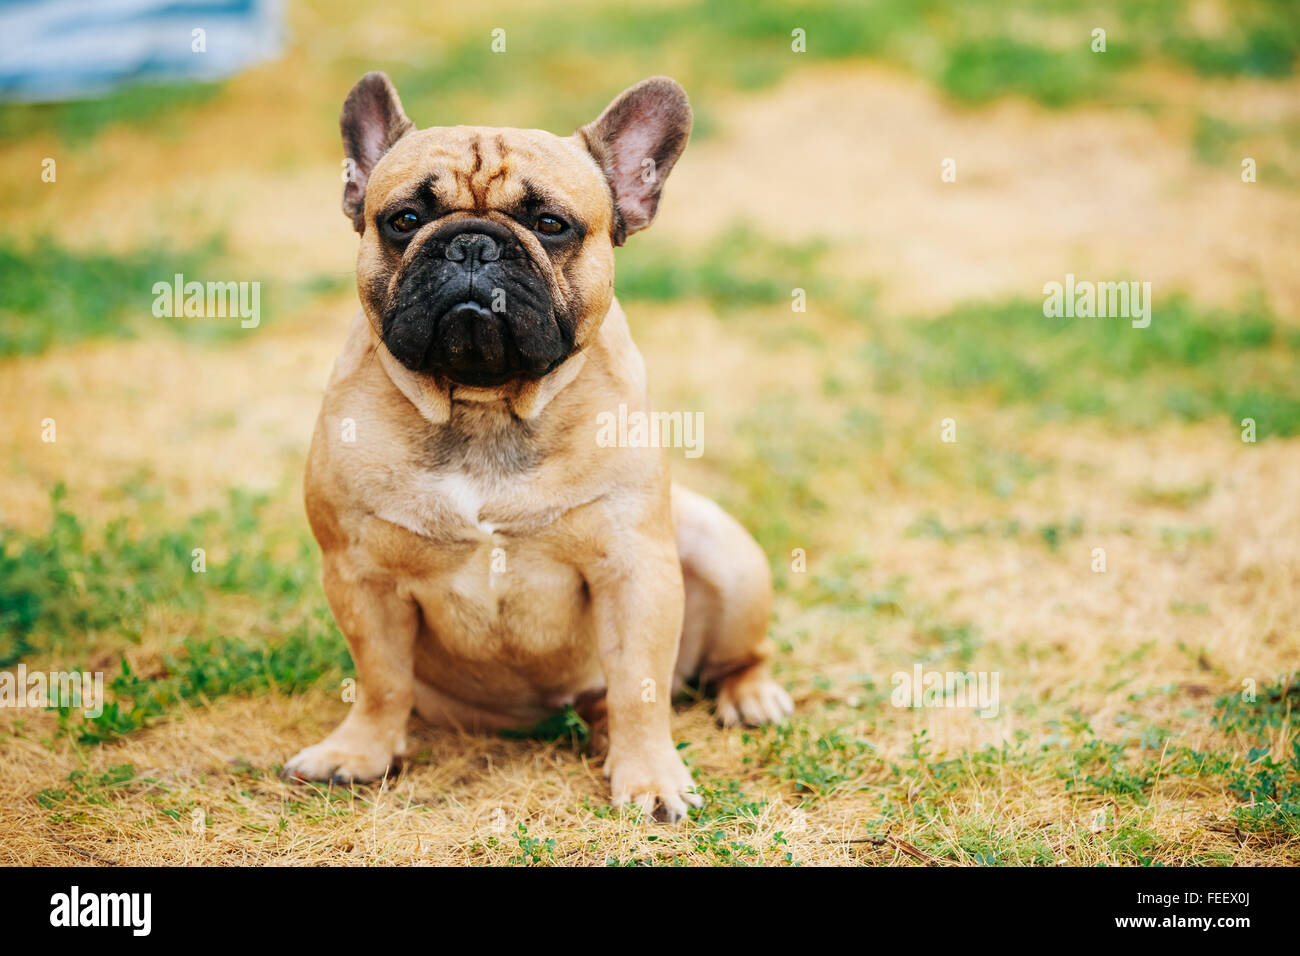 Carino rosso, marrone bulldog francese cane seduto in un parco estivo all'aperto Foto Stock